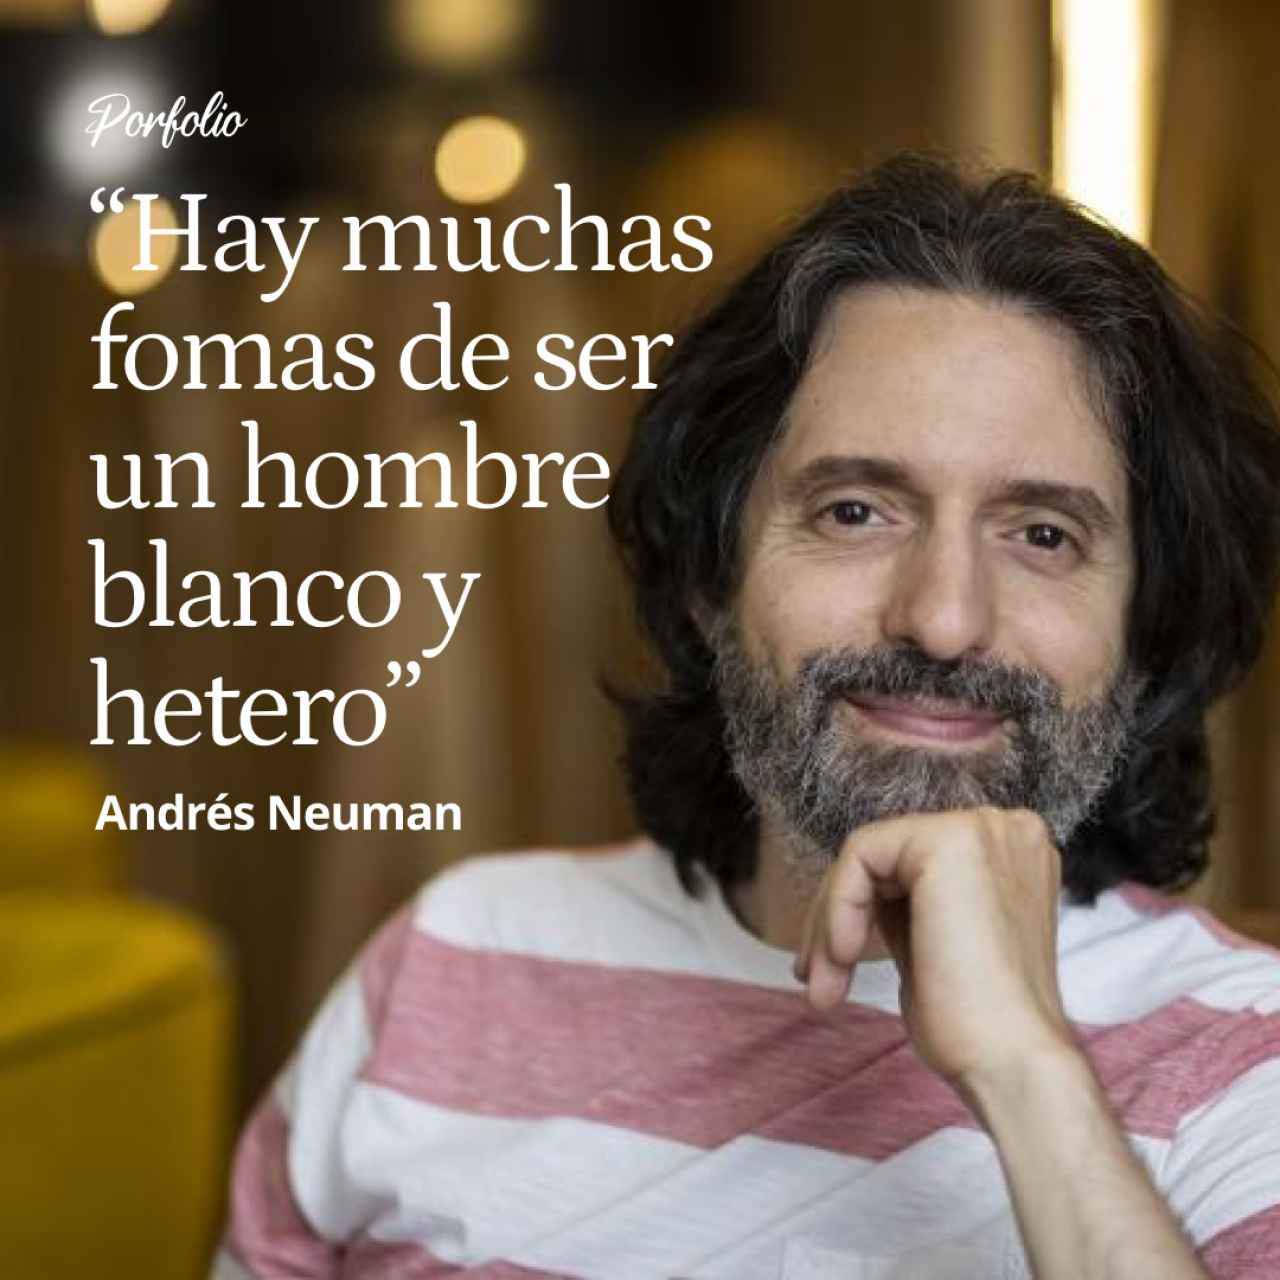 Andrés Neuman: "Hay Muchas Maneras de ser un Hombre Blanco y Hetero: No Somos tan Limitados y Previsibles Como Nos han Querido Hacer Creer"